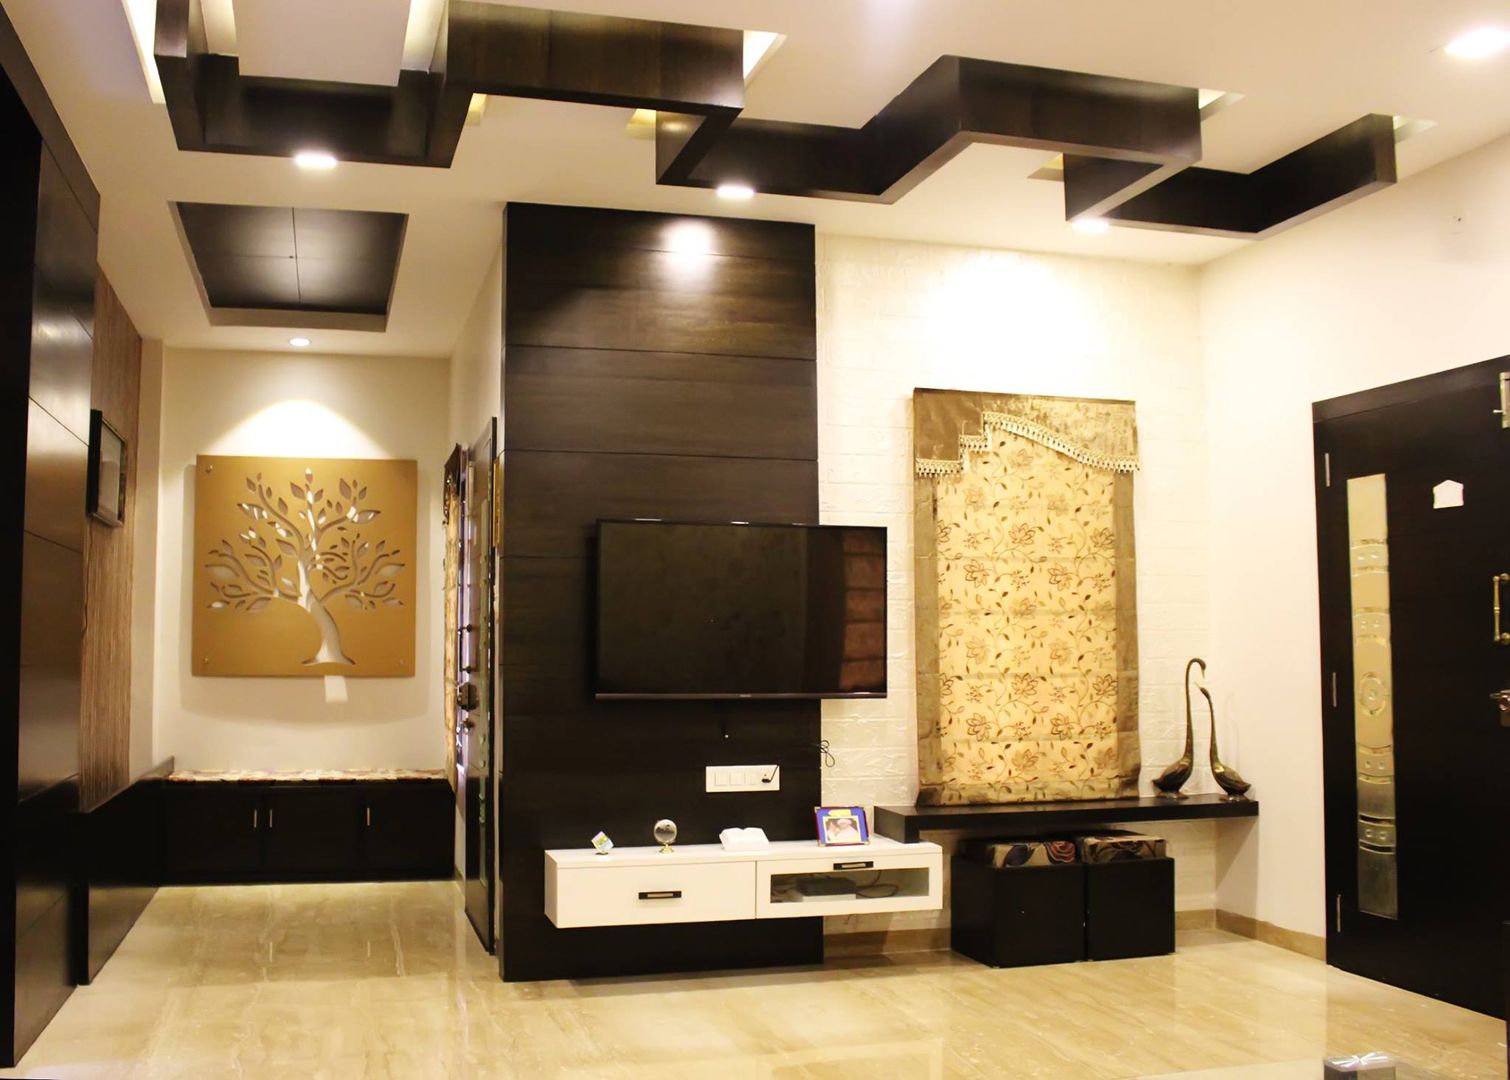 Duplex in Indore, Shadab Anwari & Associates. Shadab Anwari & Associates. Salas de estar asiáticas